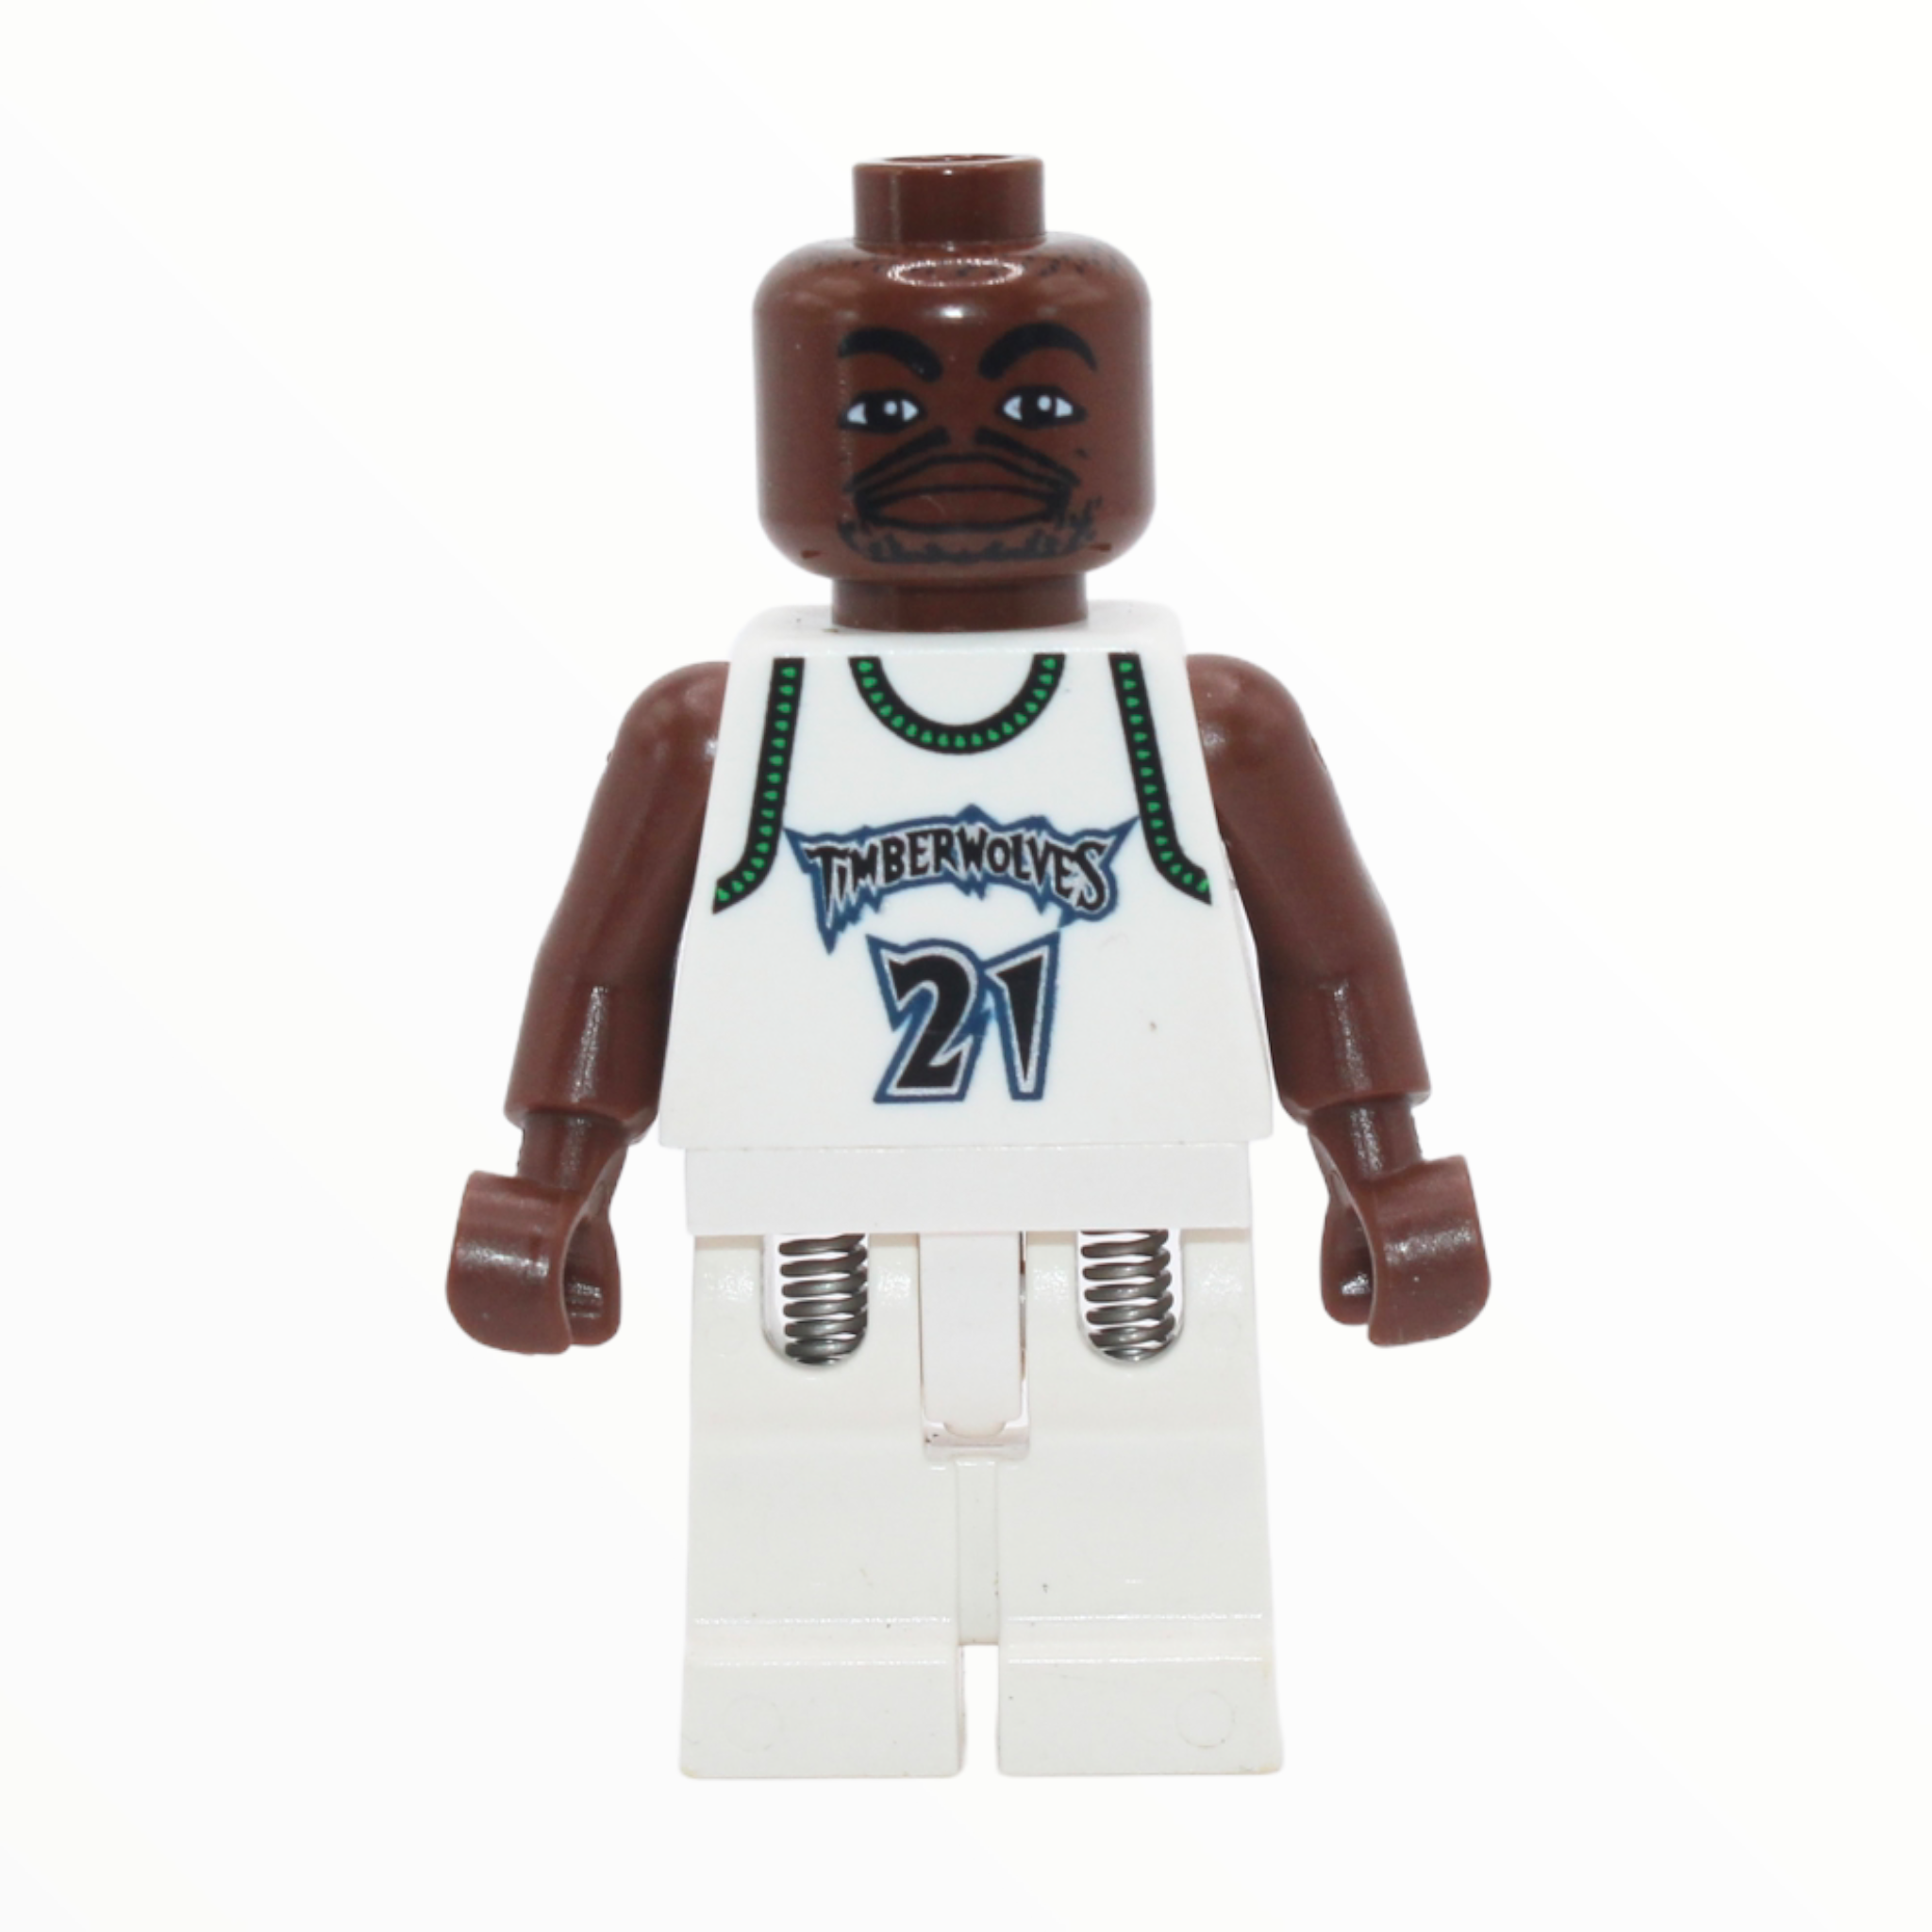 Kevin Garnett - Minnesota Timberwolves #21 (white uniform)